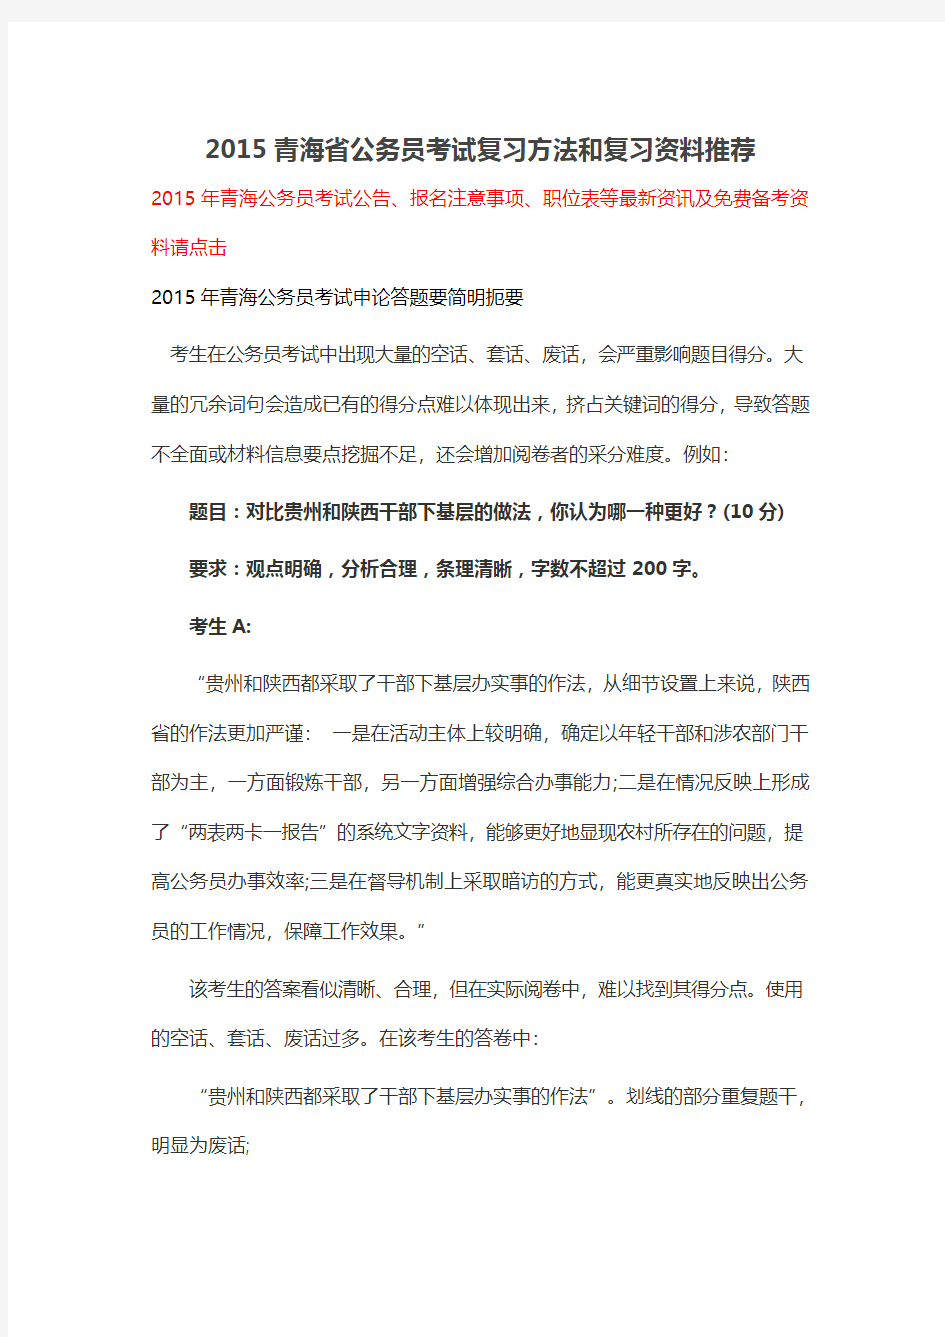 2015青海省公务员考试复习方法和复习资料推荐